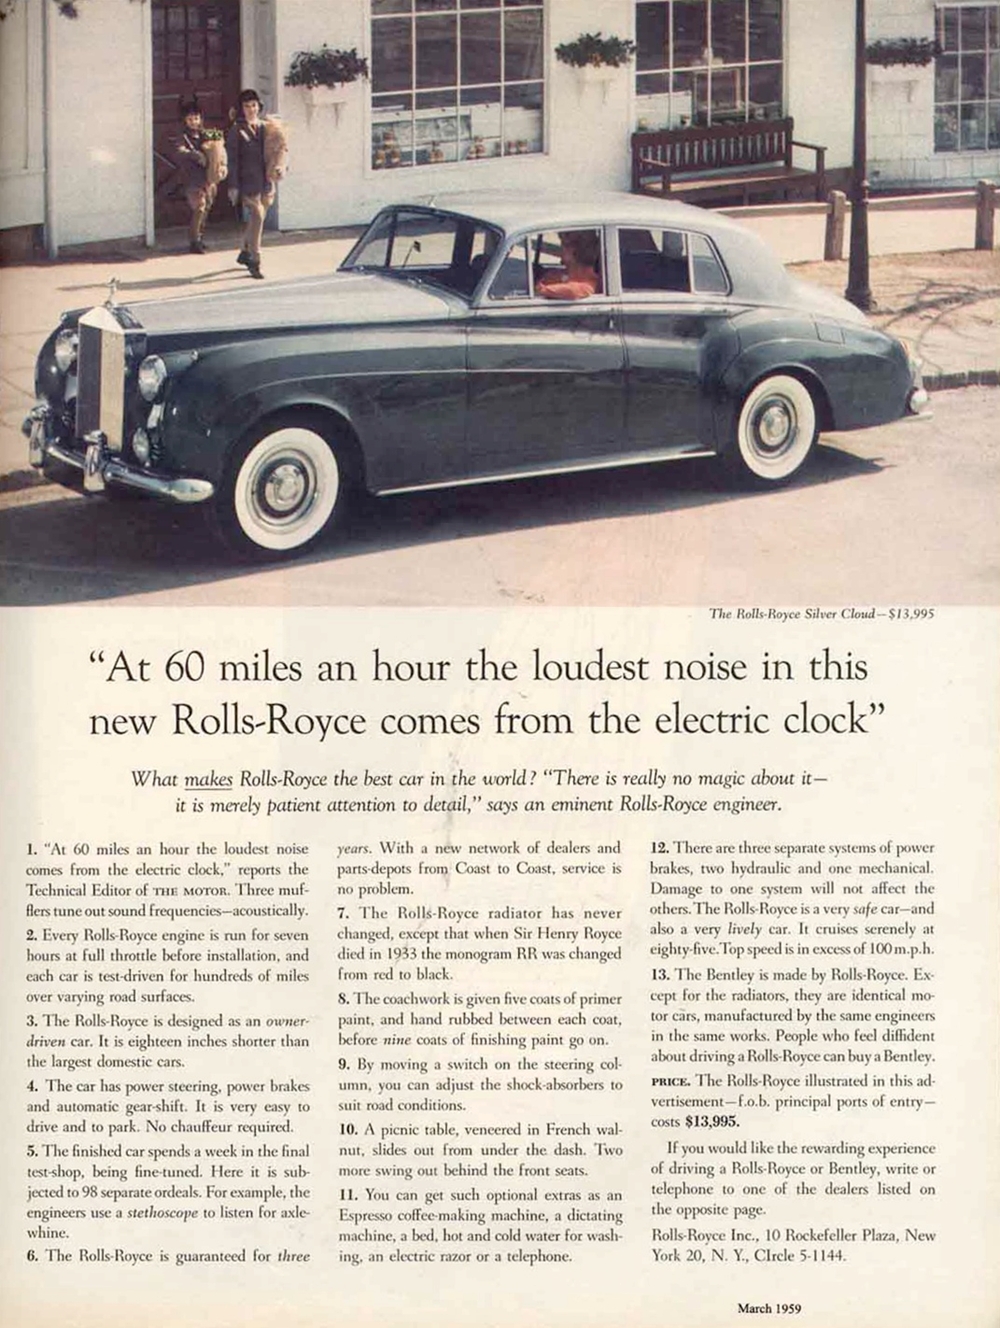 Anúncio escrito por David Ogilvy para a Rolls Royce